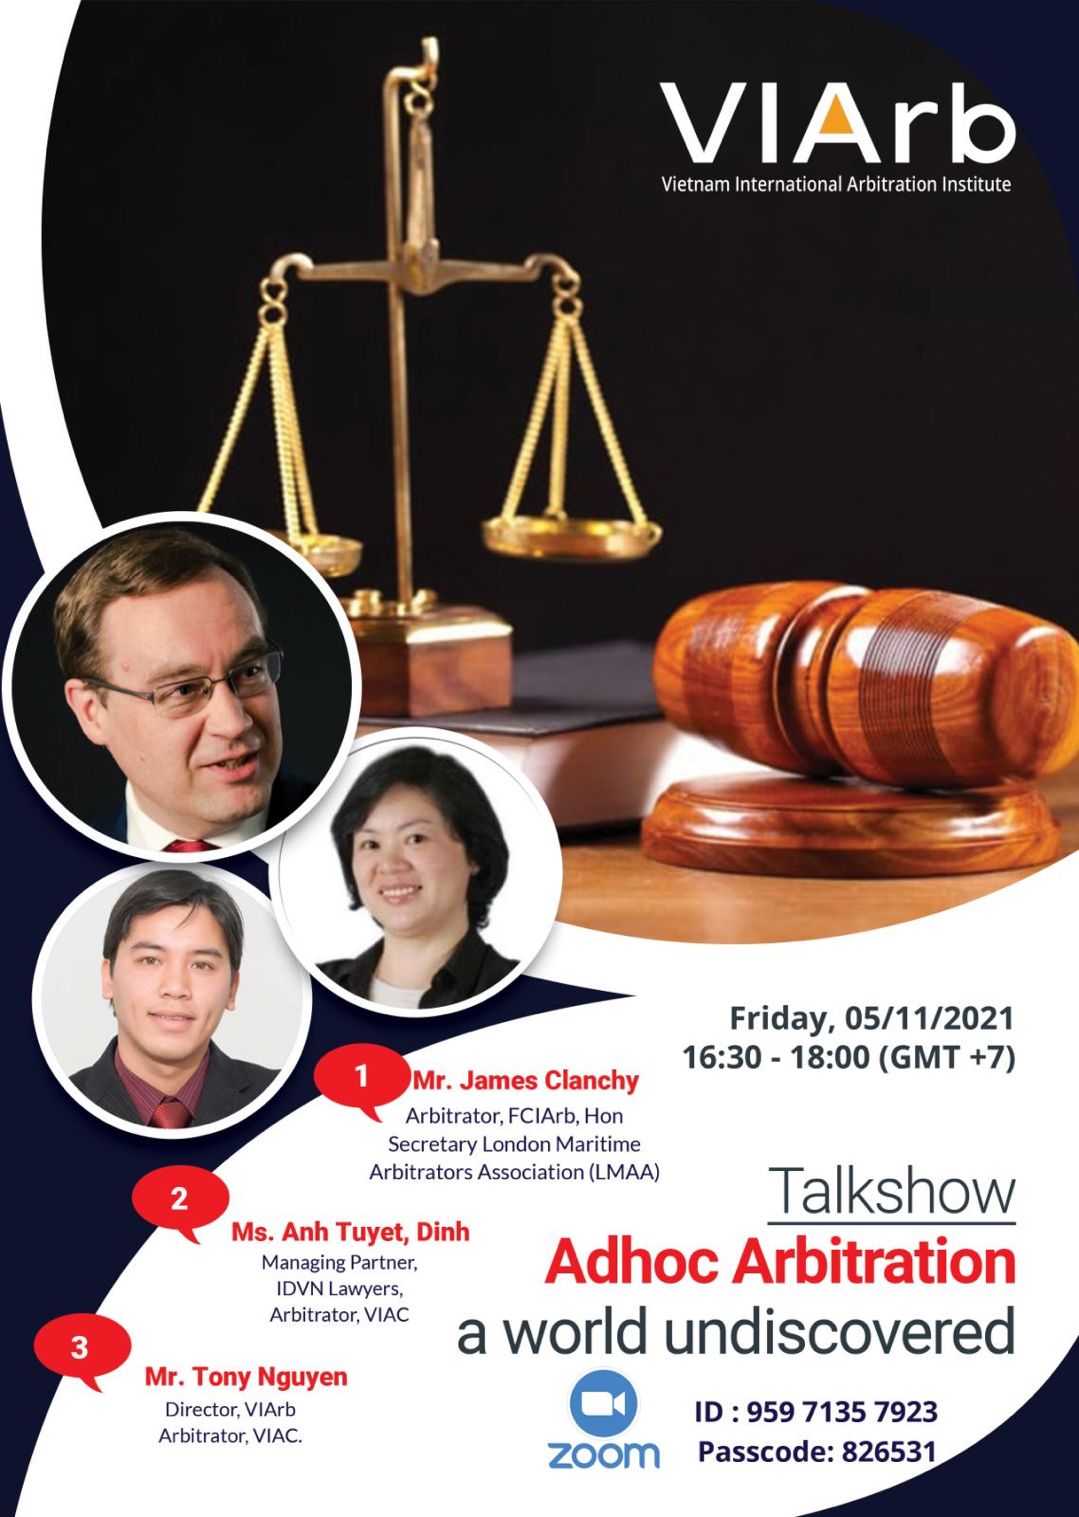 Adhoc Arbitration vs Institutional Arbitration